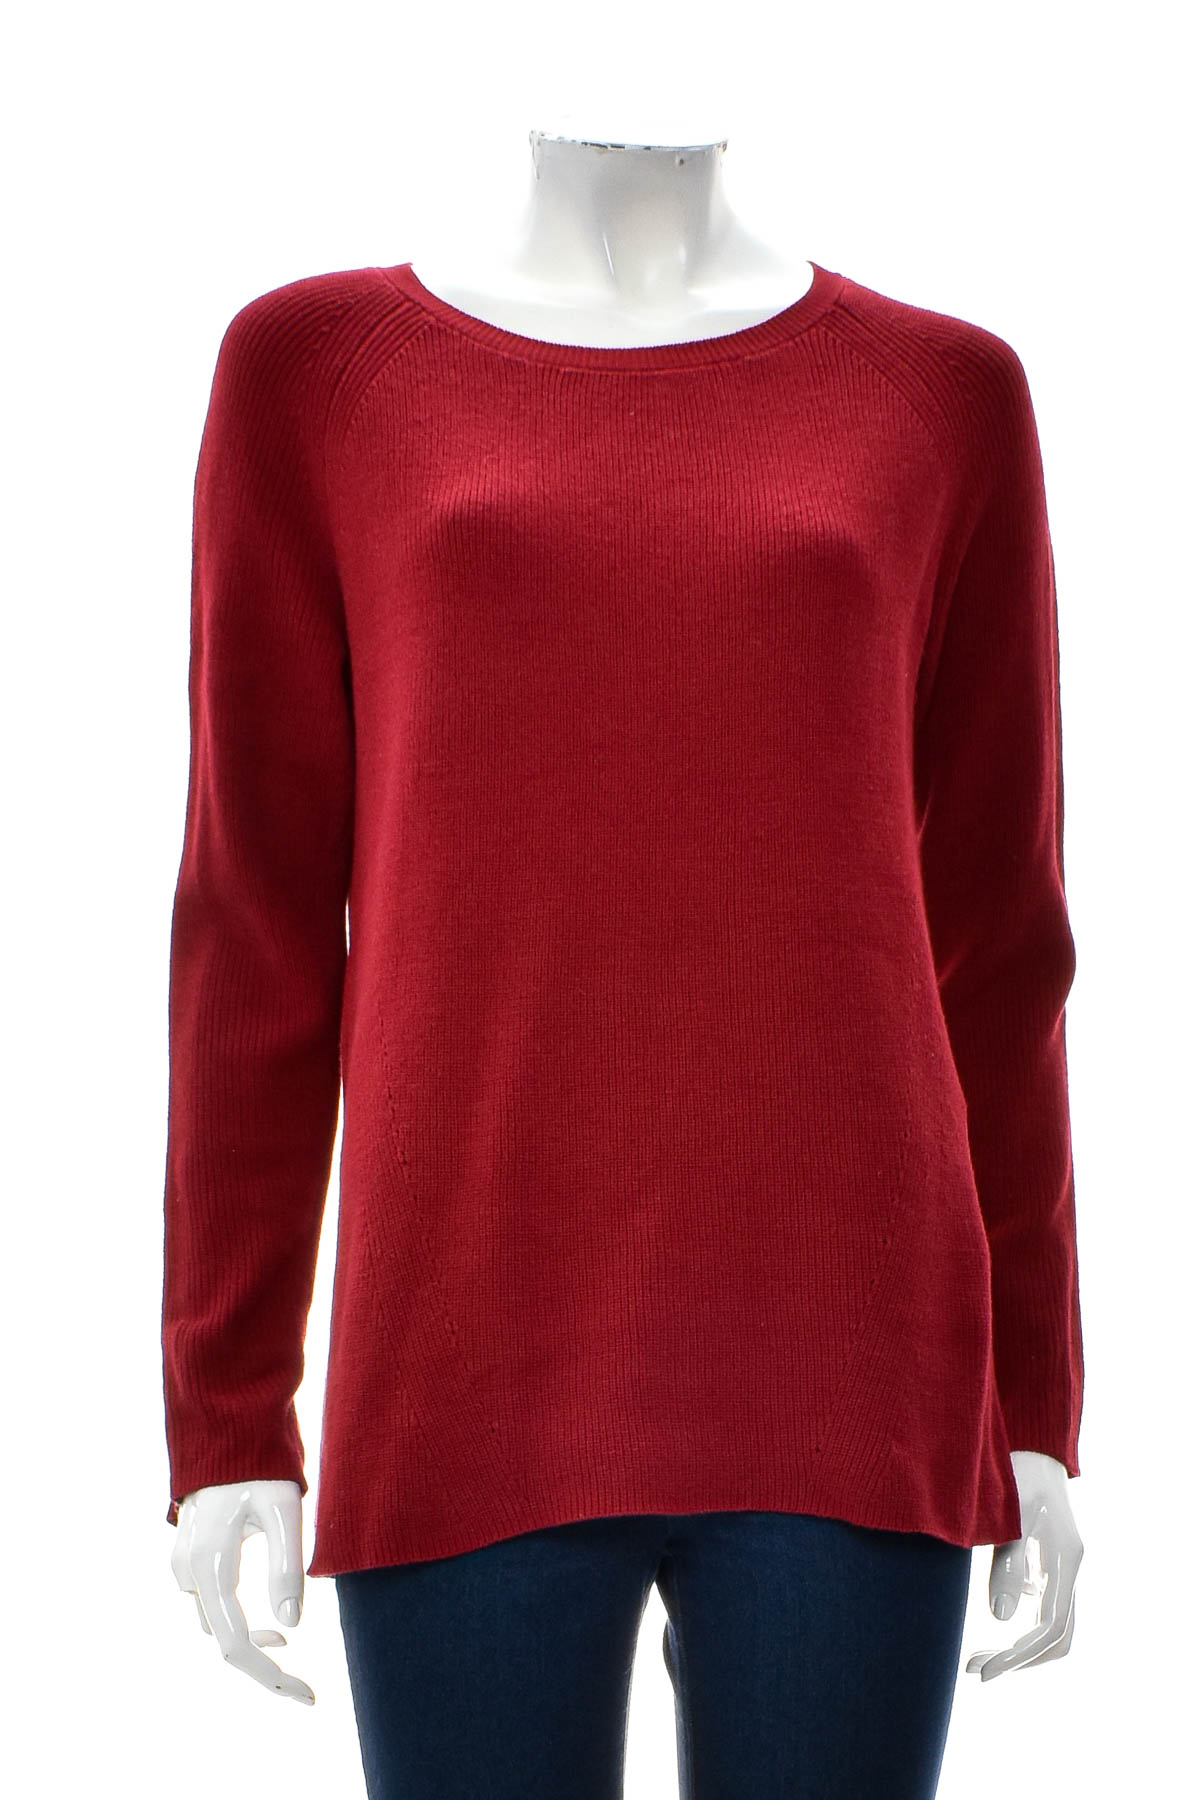 Women's sweater - Peckott - 0